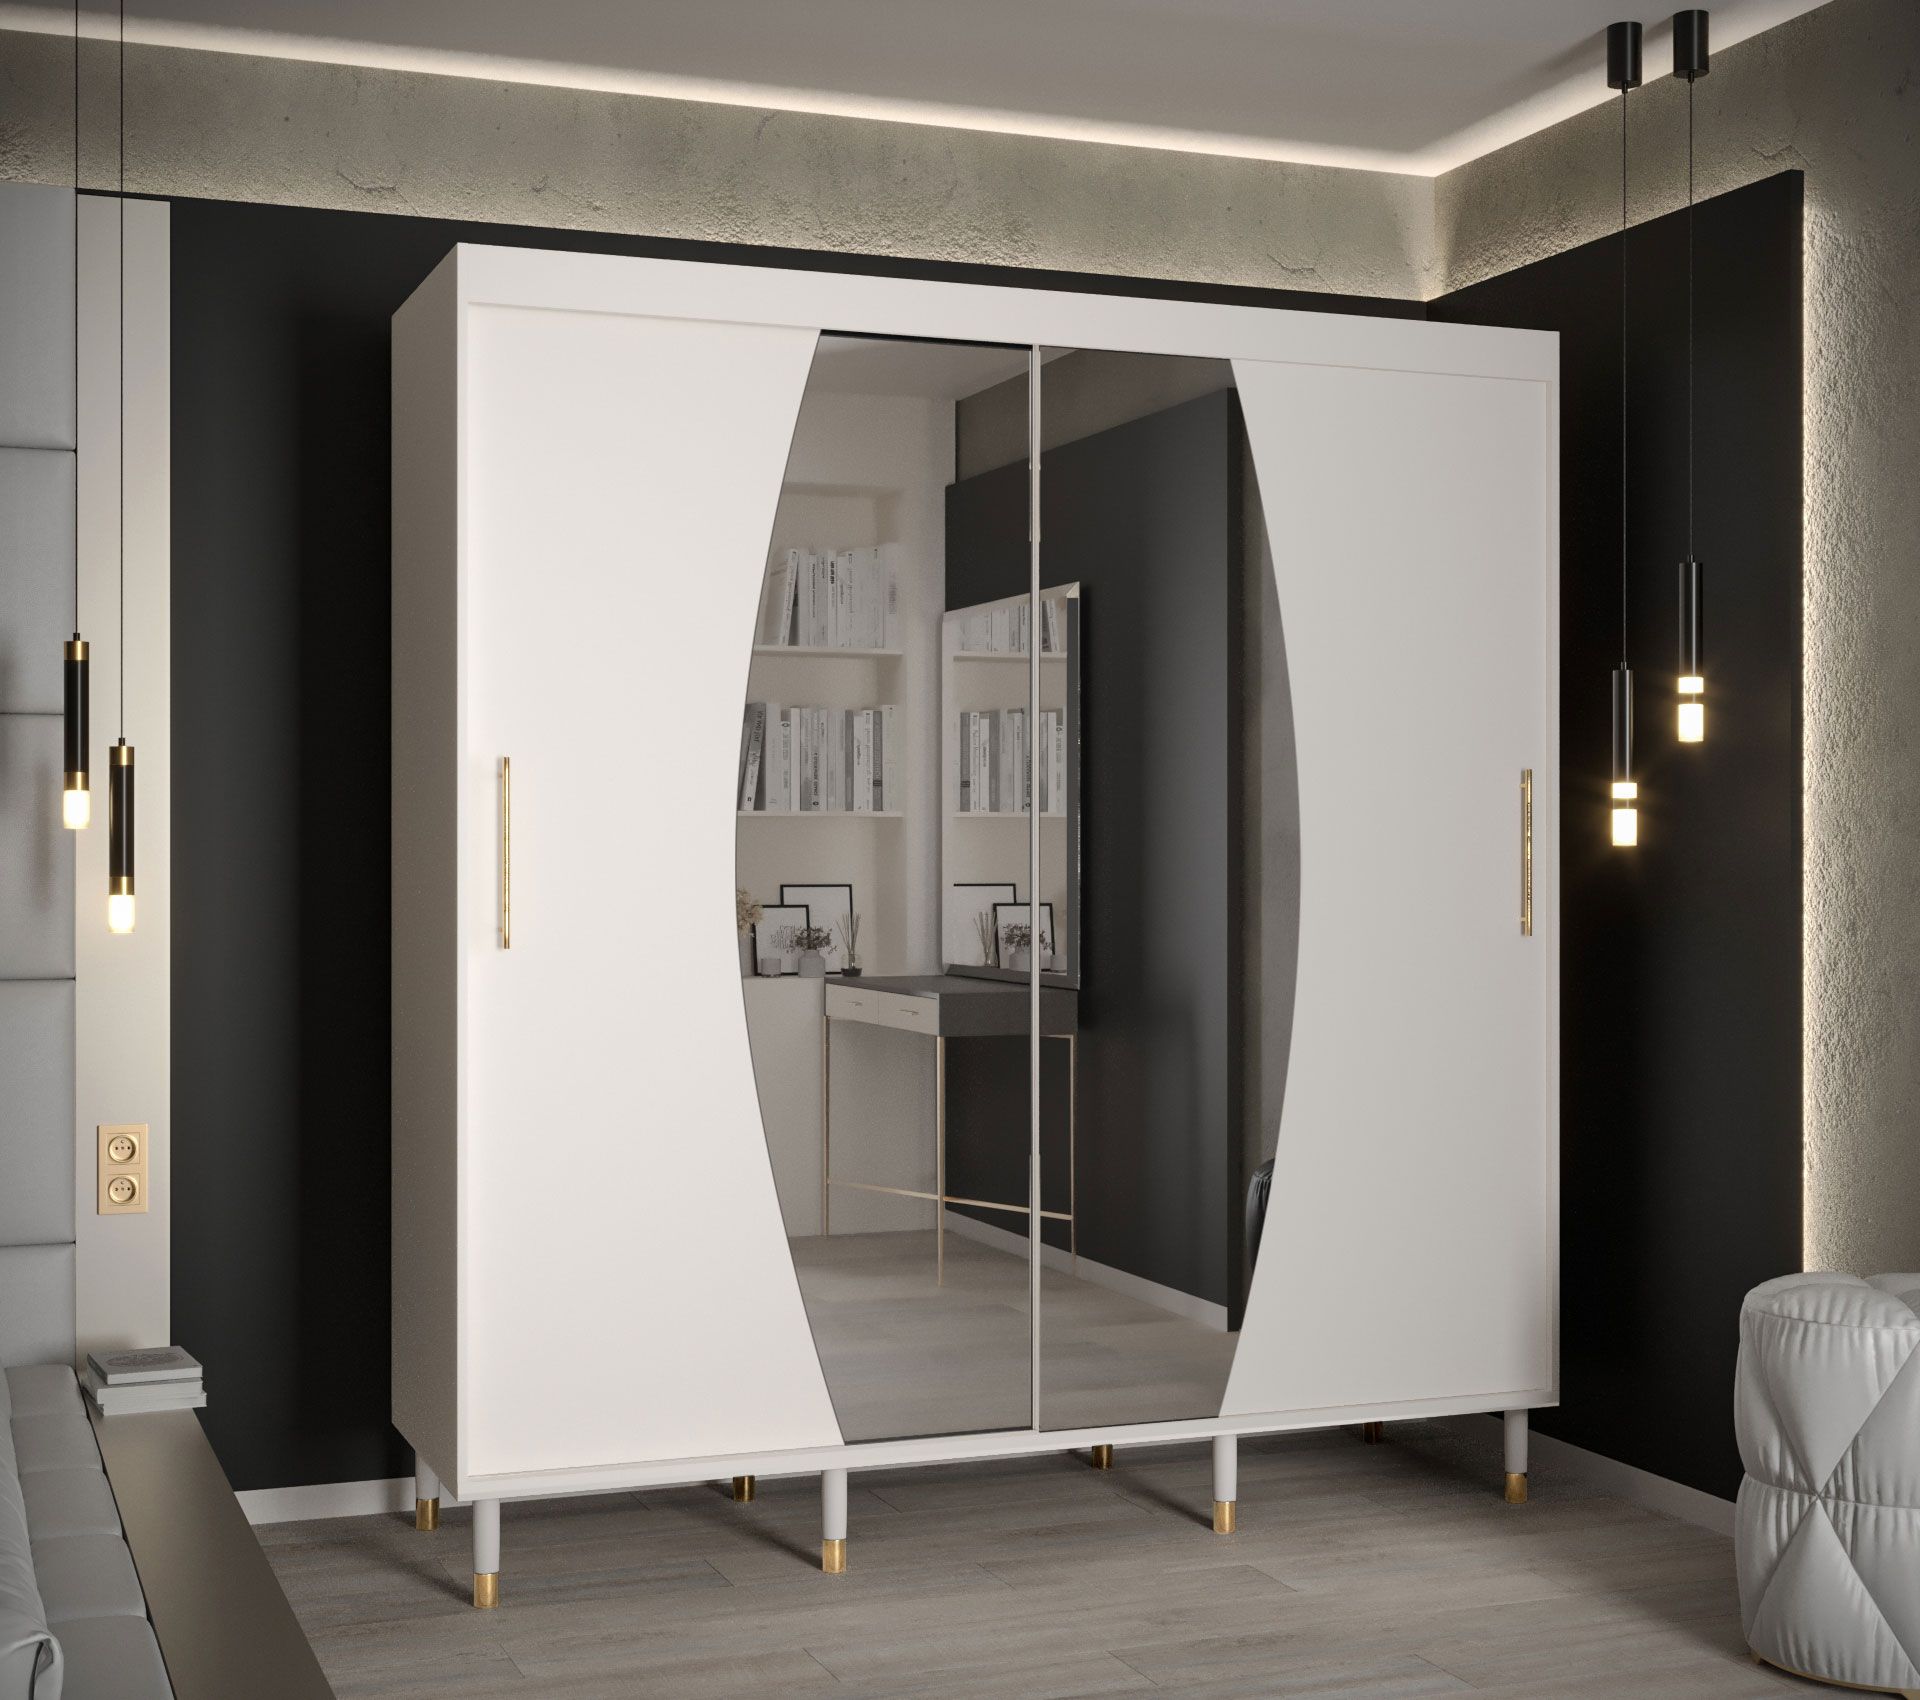 Kledingkast met buitengewoon design Jotunheimen 177, kleur: wit - Afmetingen: 208 x 200,5 x 62 cm (H x B x D)